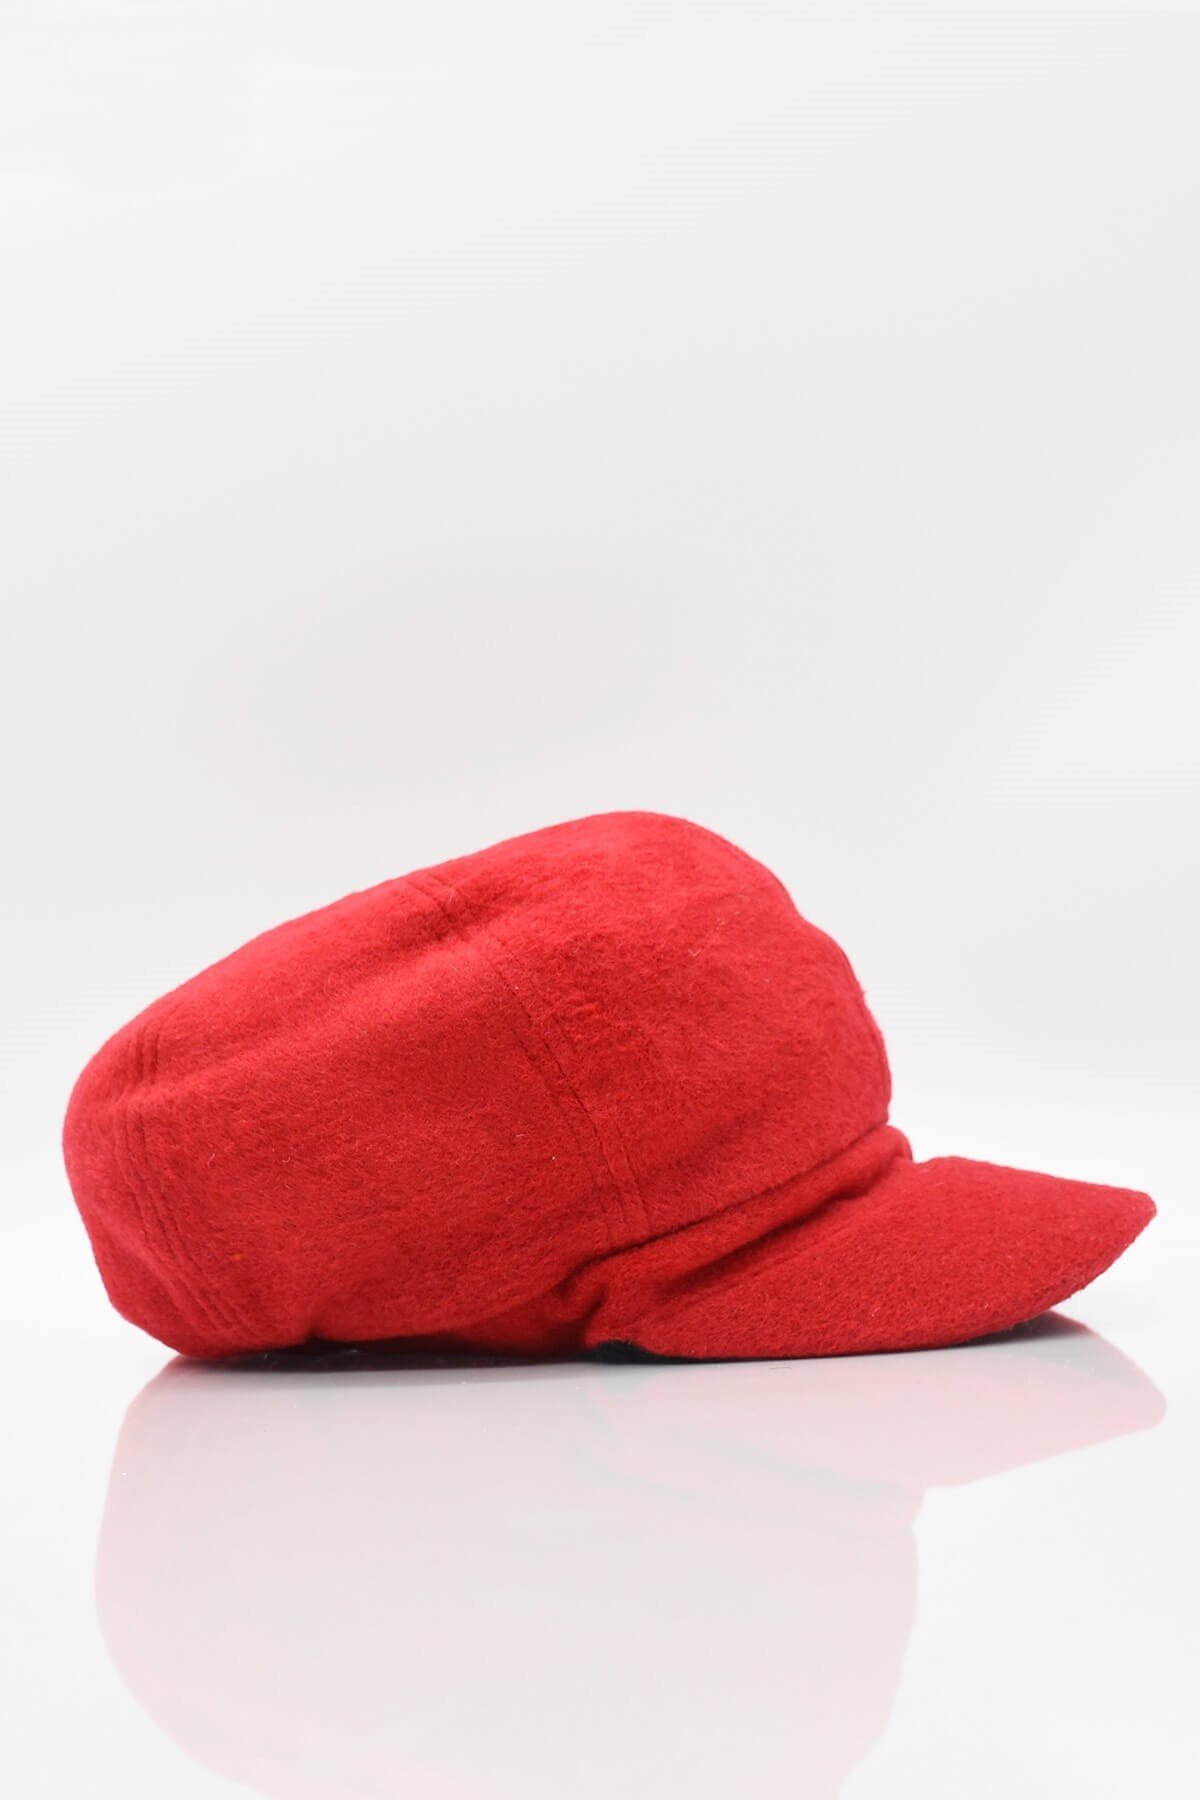 Külah Kırmızı Bayan Şapka Kadın Kasket Yün Flat Cap KLH6788